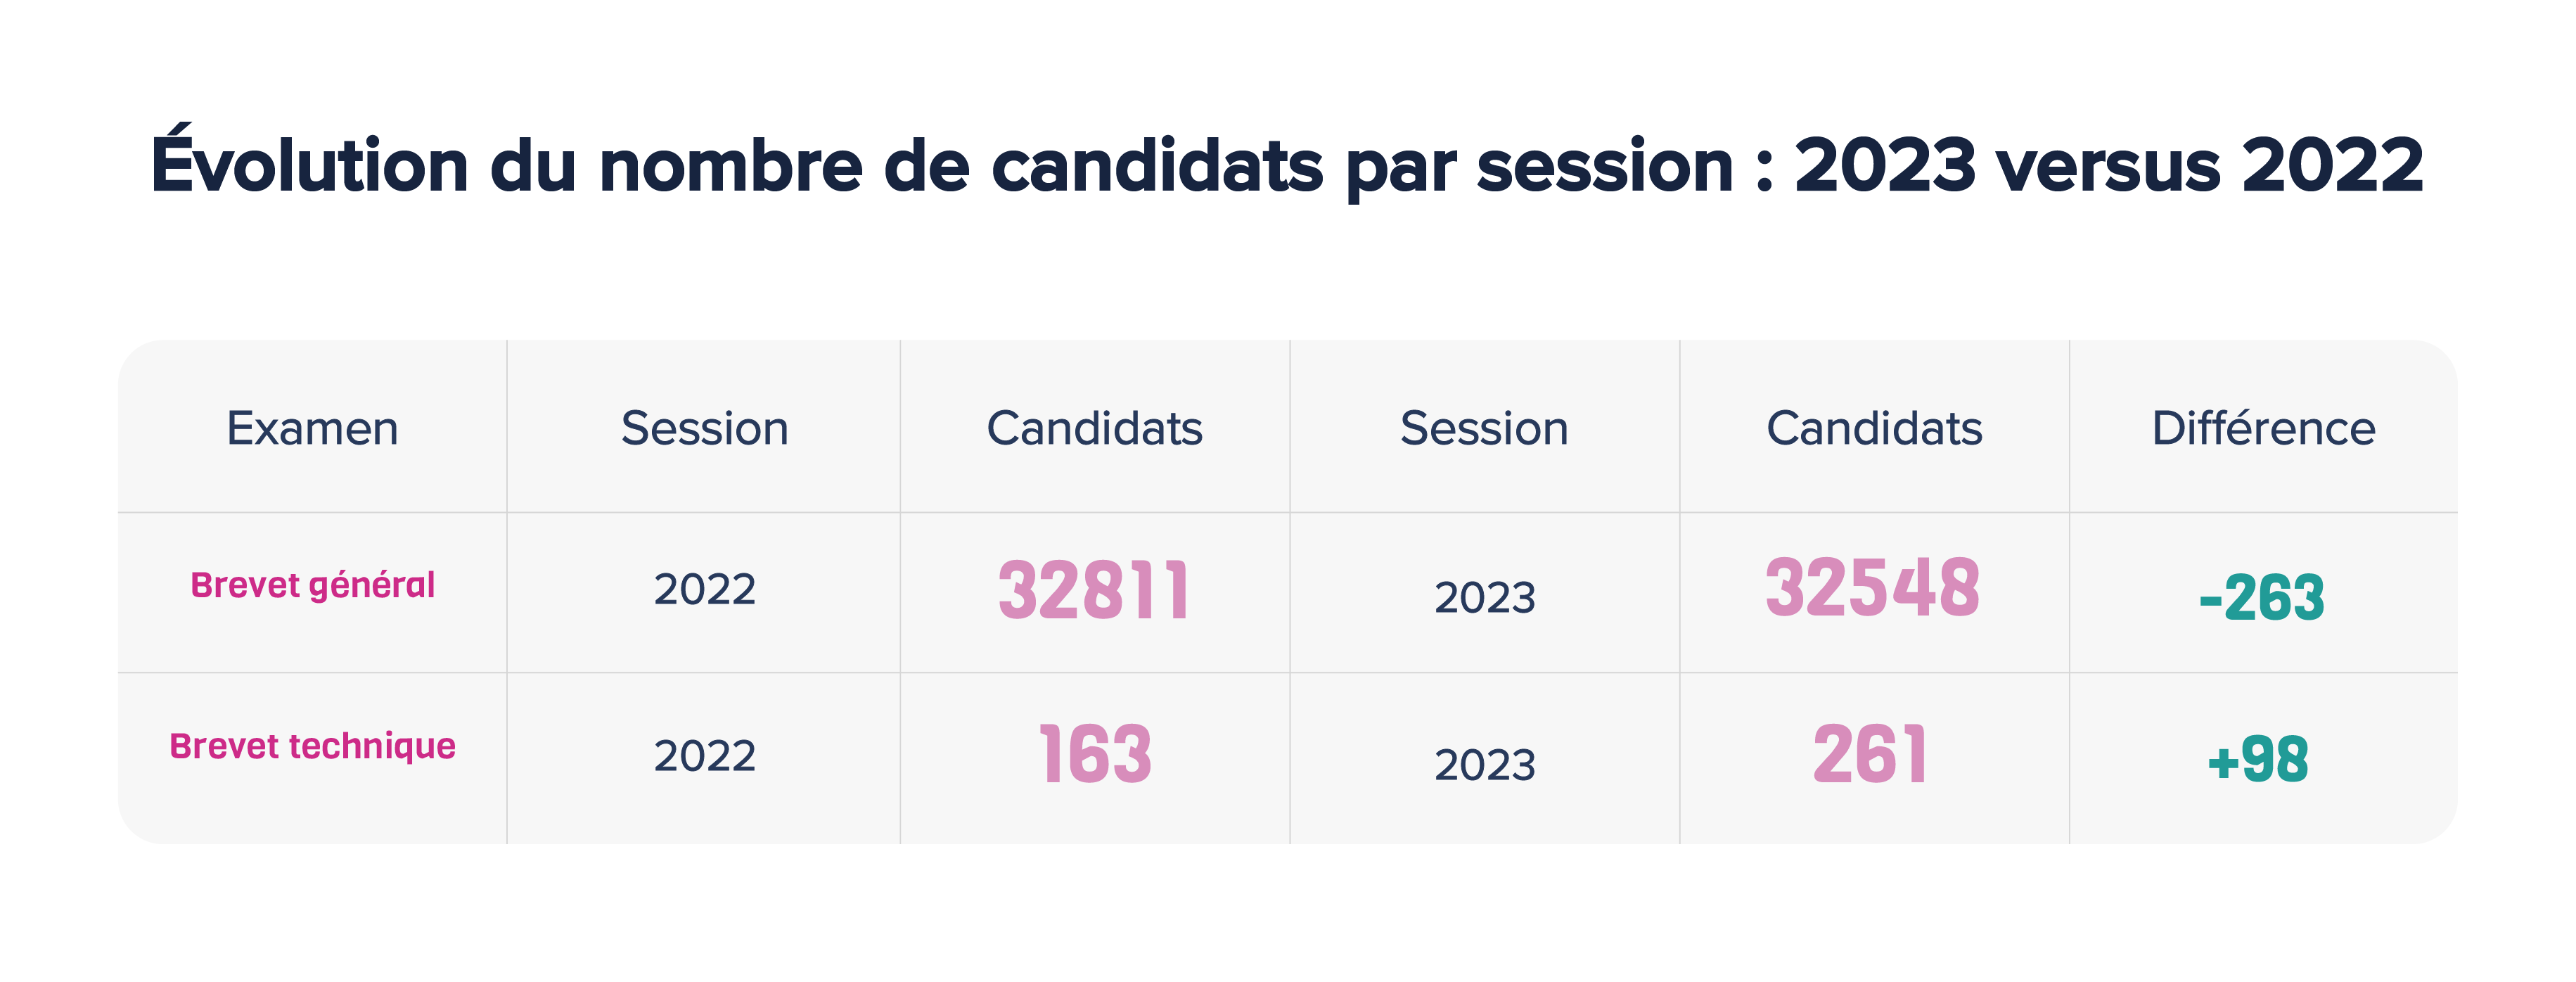 évolution du nombre des candidats par session : 2023 versus 2022